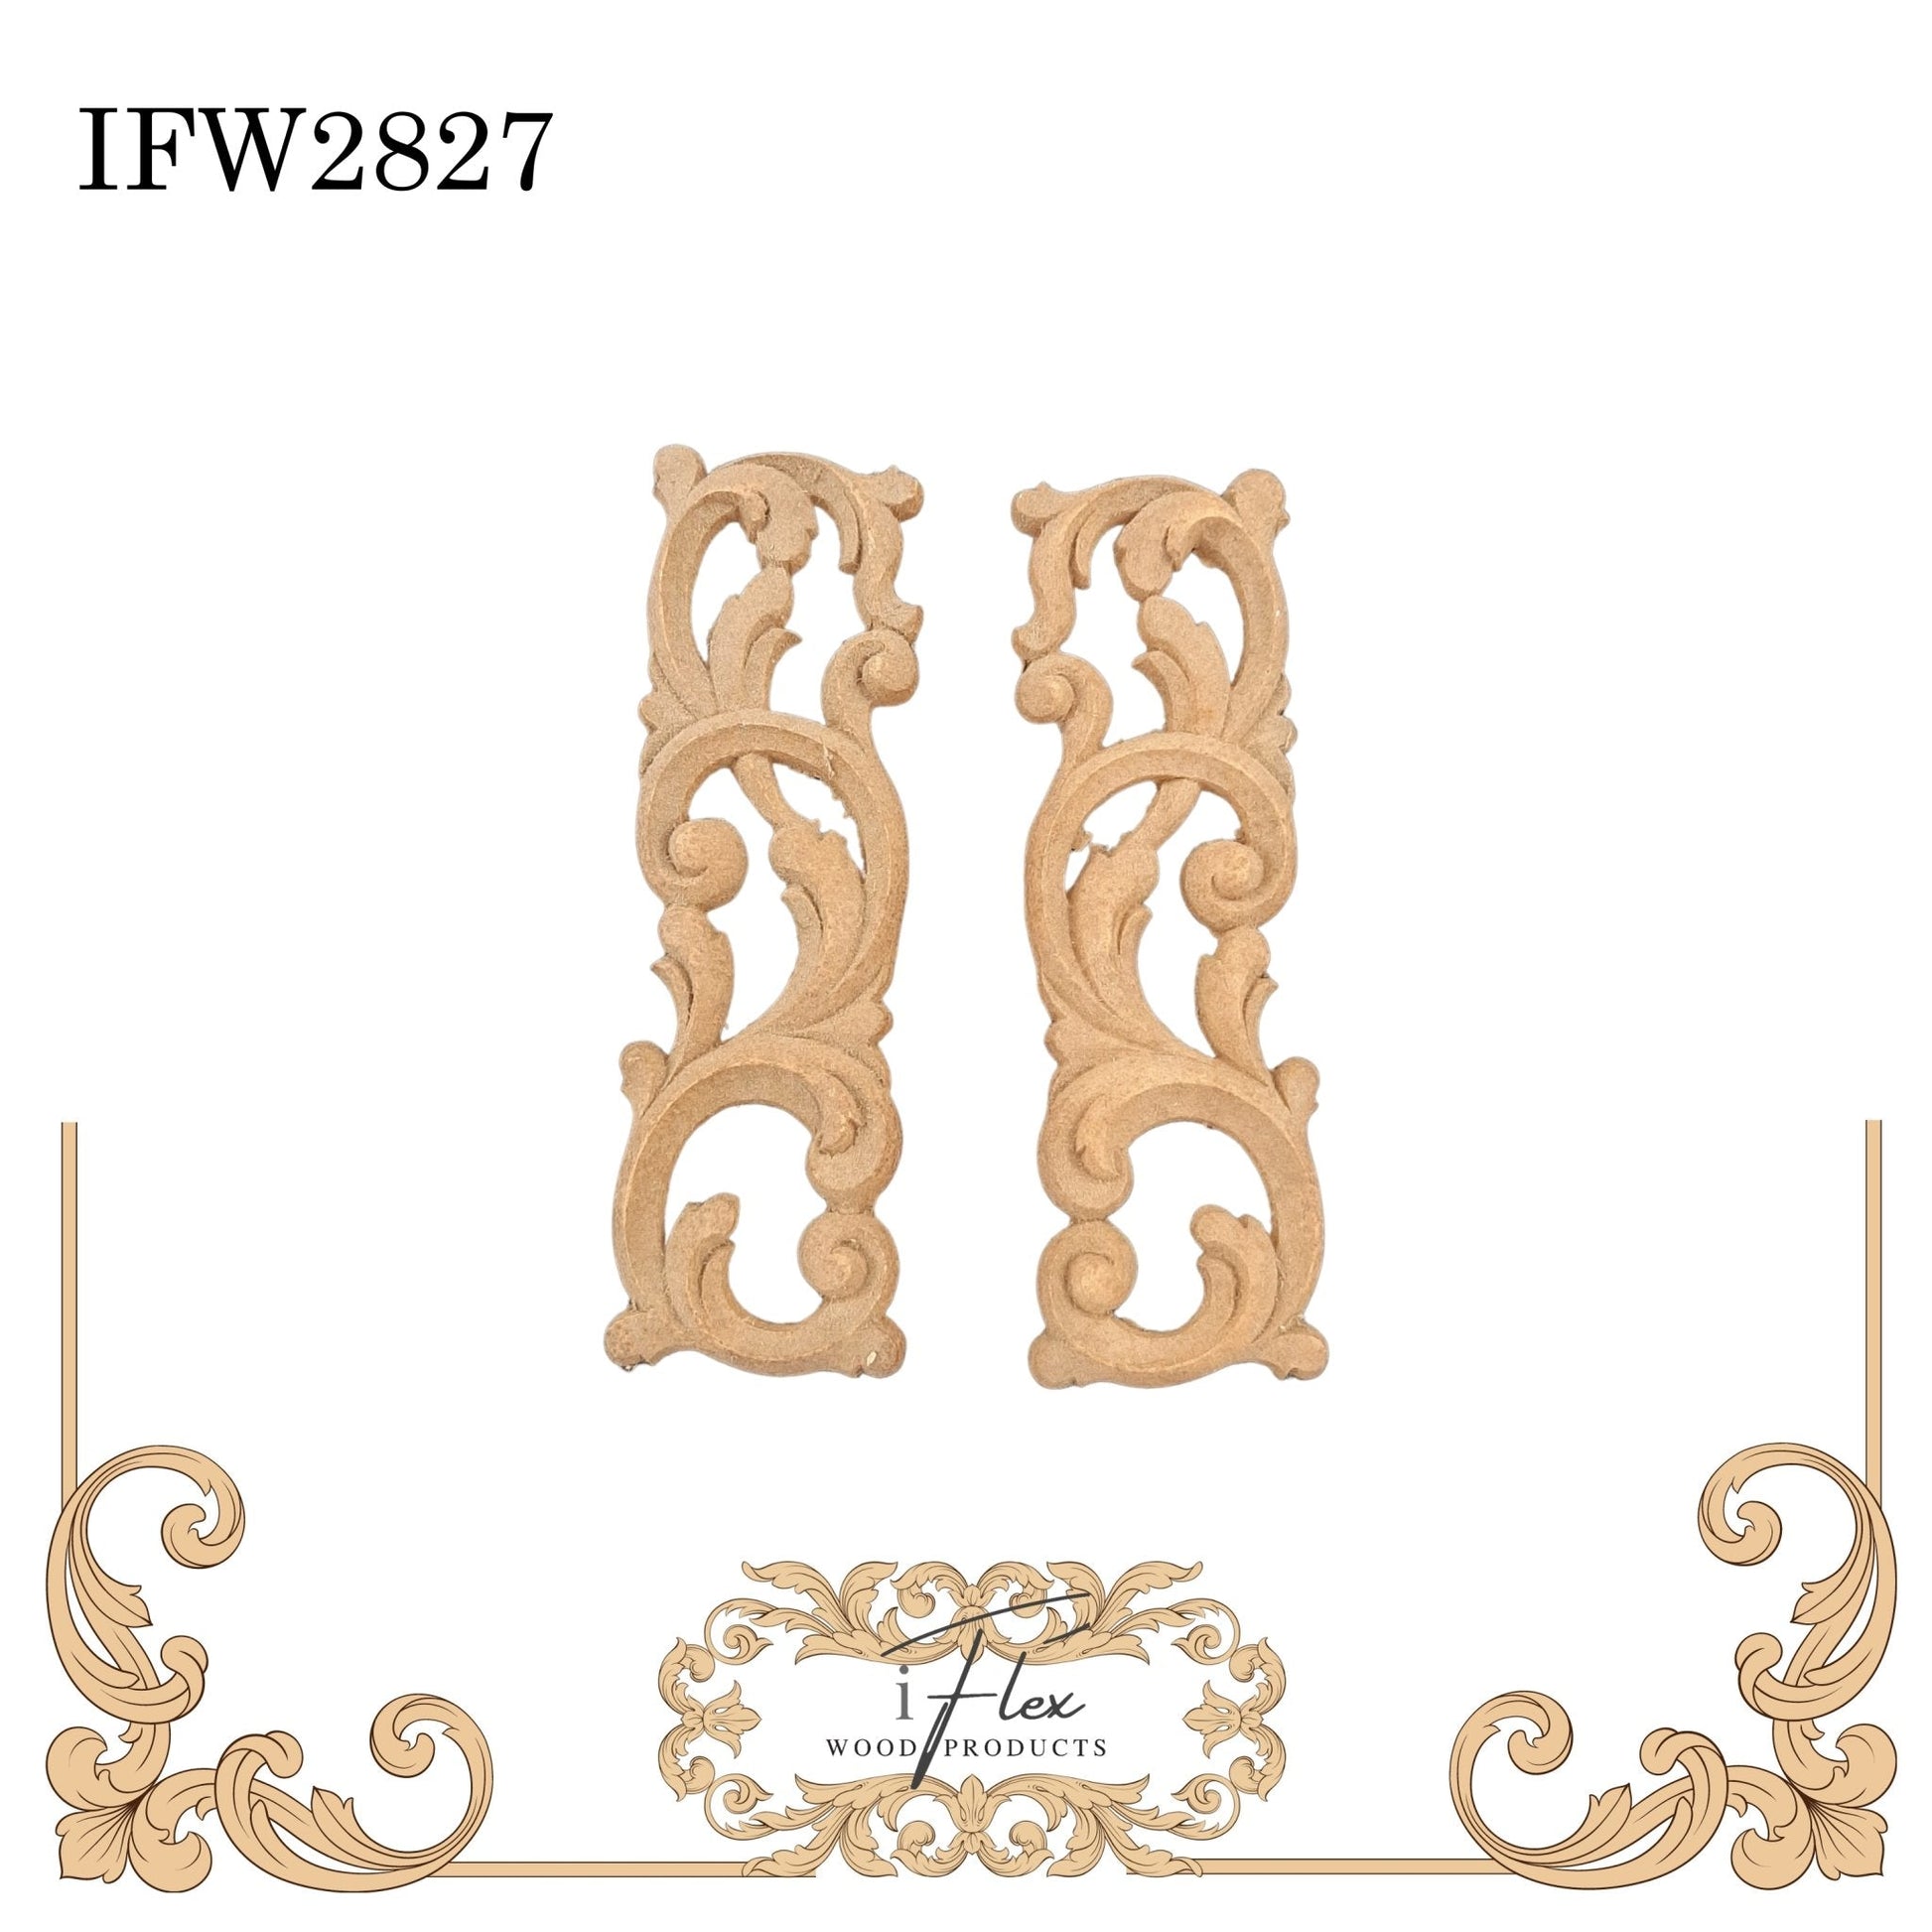 IFW 2827